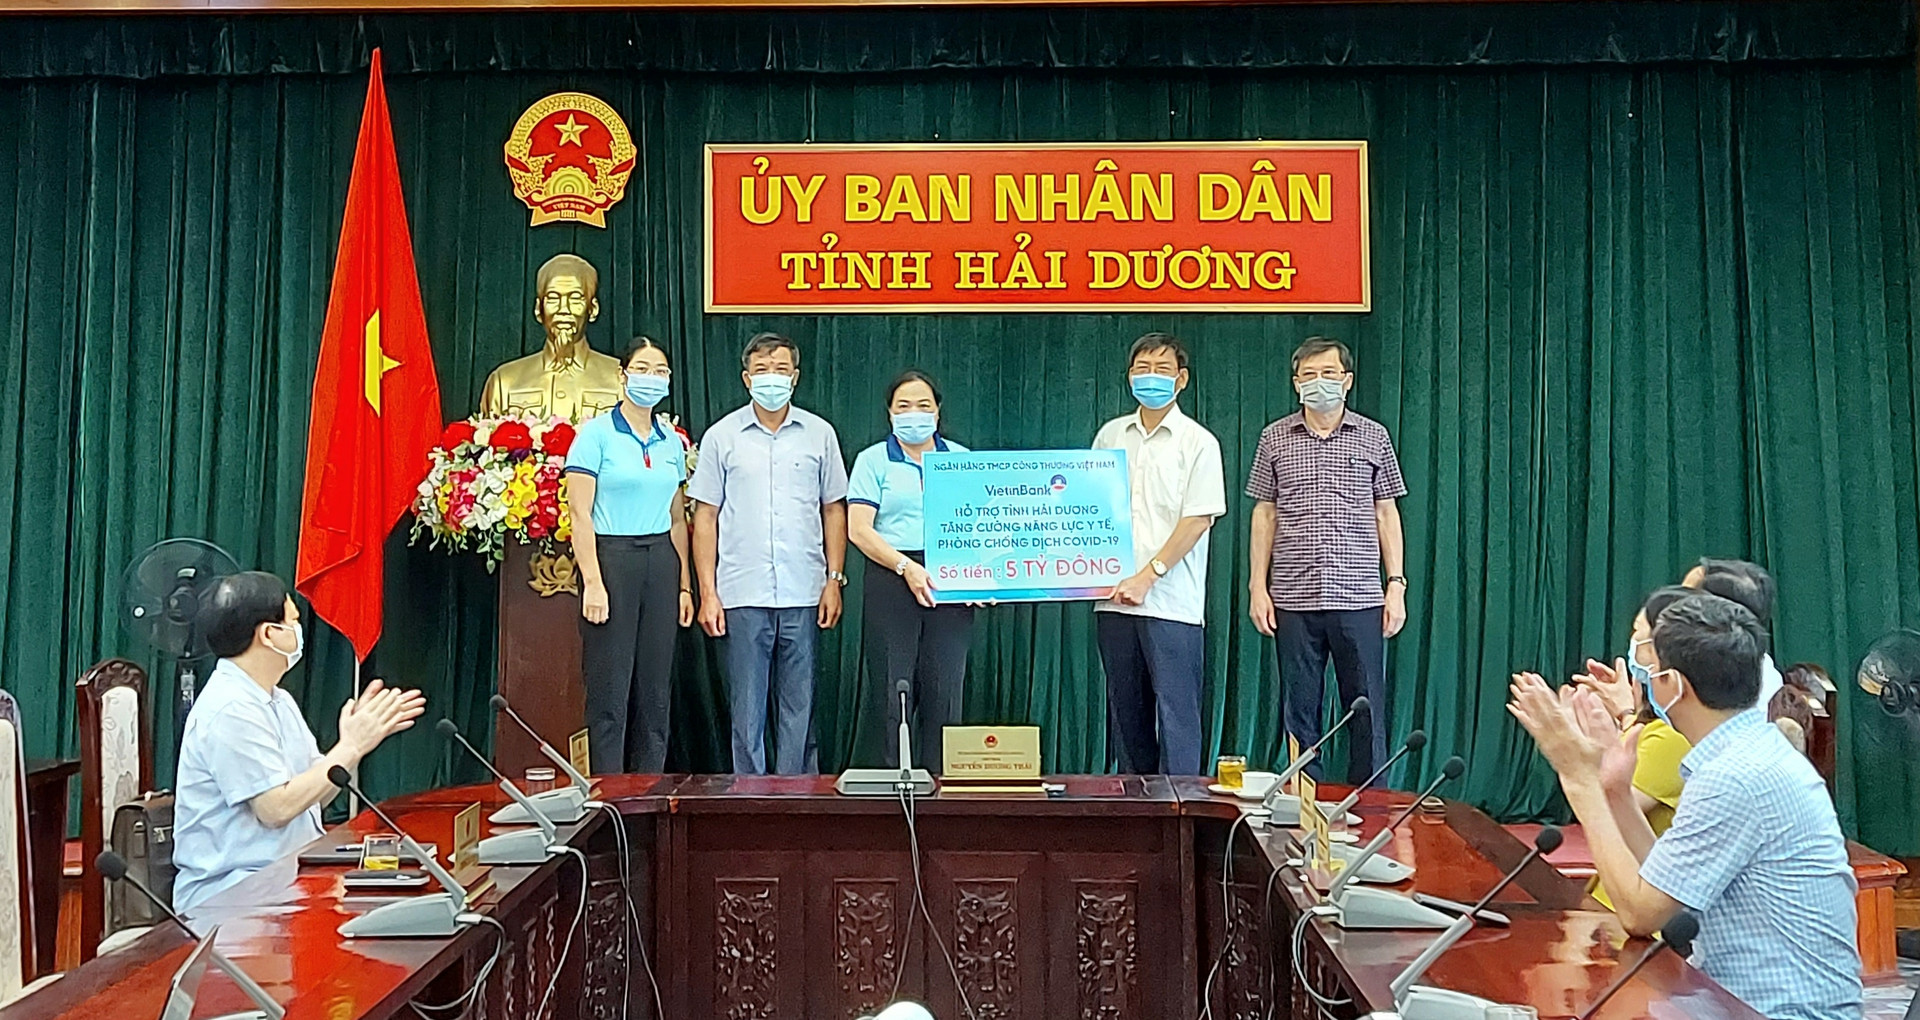 VietinBank ủng hộ tỉnh Hải Dương 5 tỷ đồng phòng, chống dịch Covid-19